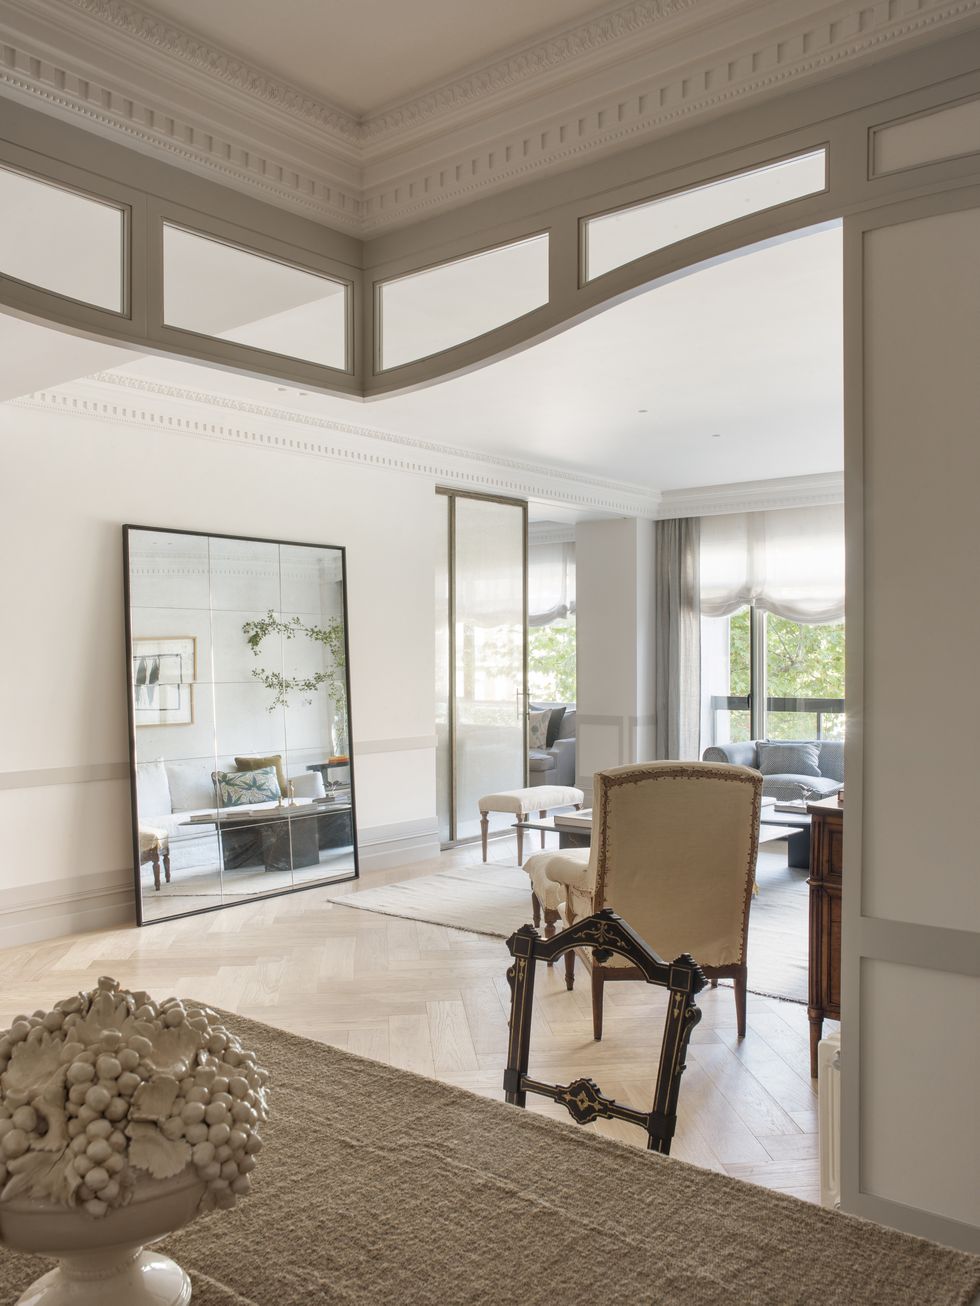 piso en madrid decorado con estilo clasico elegante y atemporal con color blanco